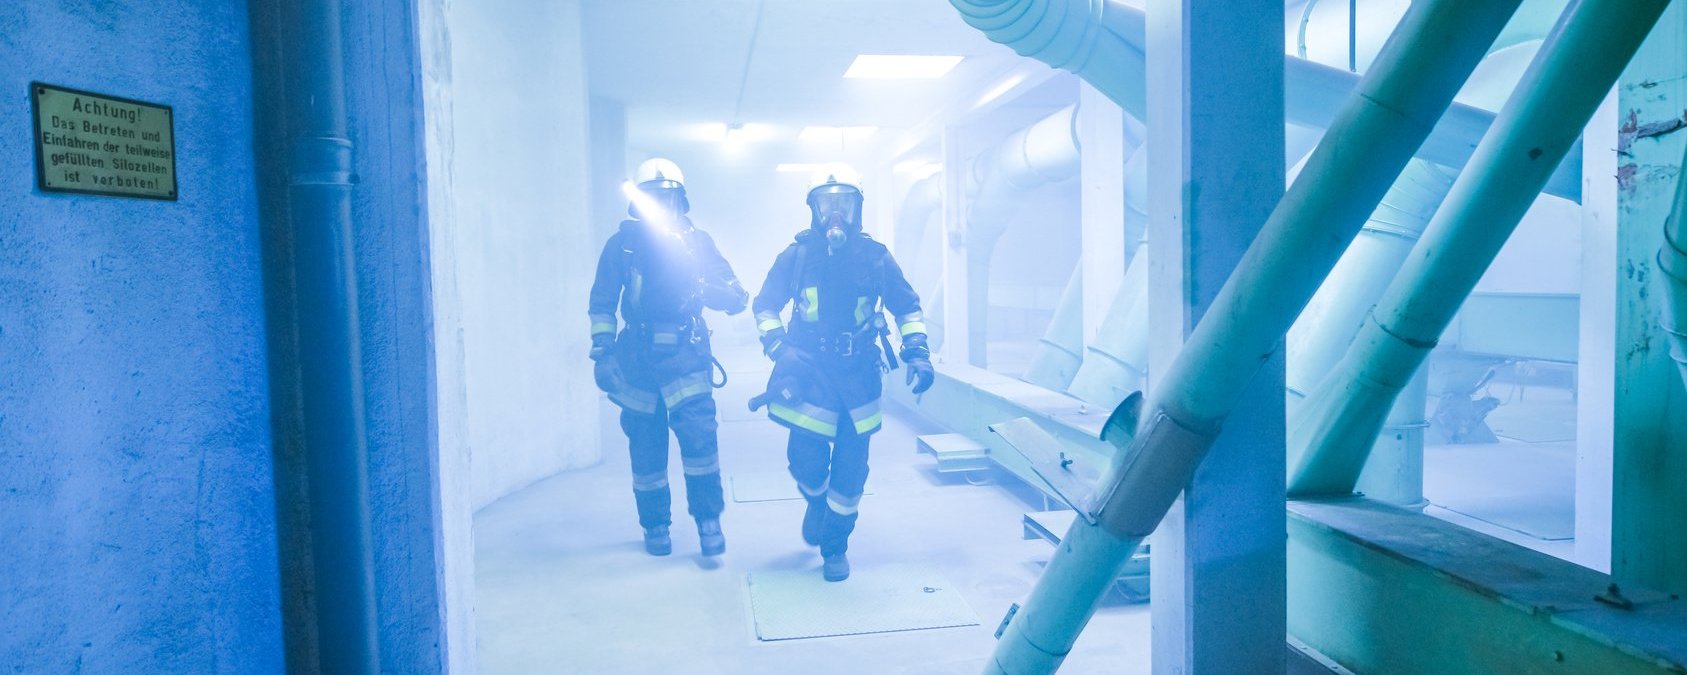 Zwei Feuerwehrmänner befinden sich in einem verrauchten Industriegebäude mit Rohren und Betonsäulen. Die beiden Personen sind in voller Einsatzkleidung und laufen mit Licht und Atemmasken auf die Kamera zu.